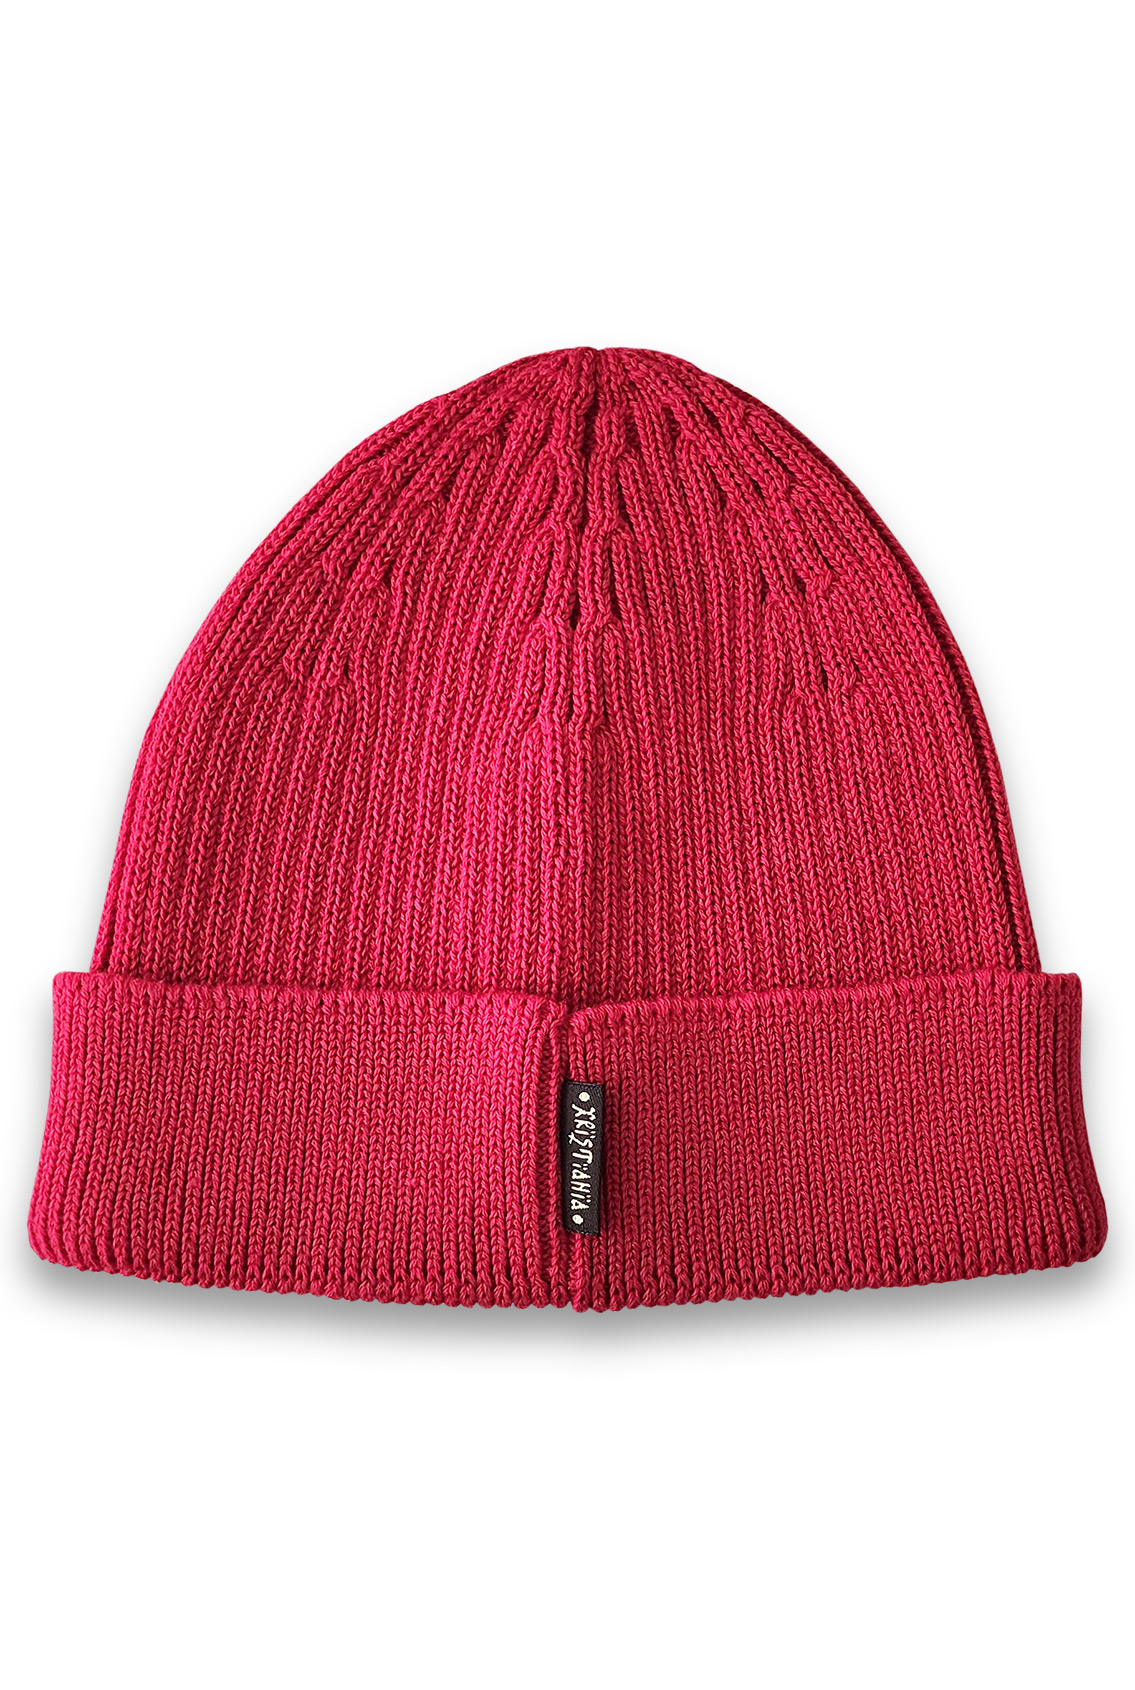 red beanie hat